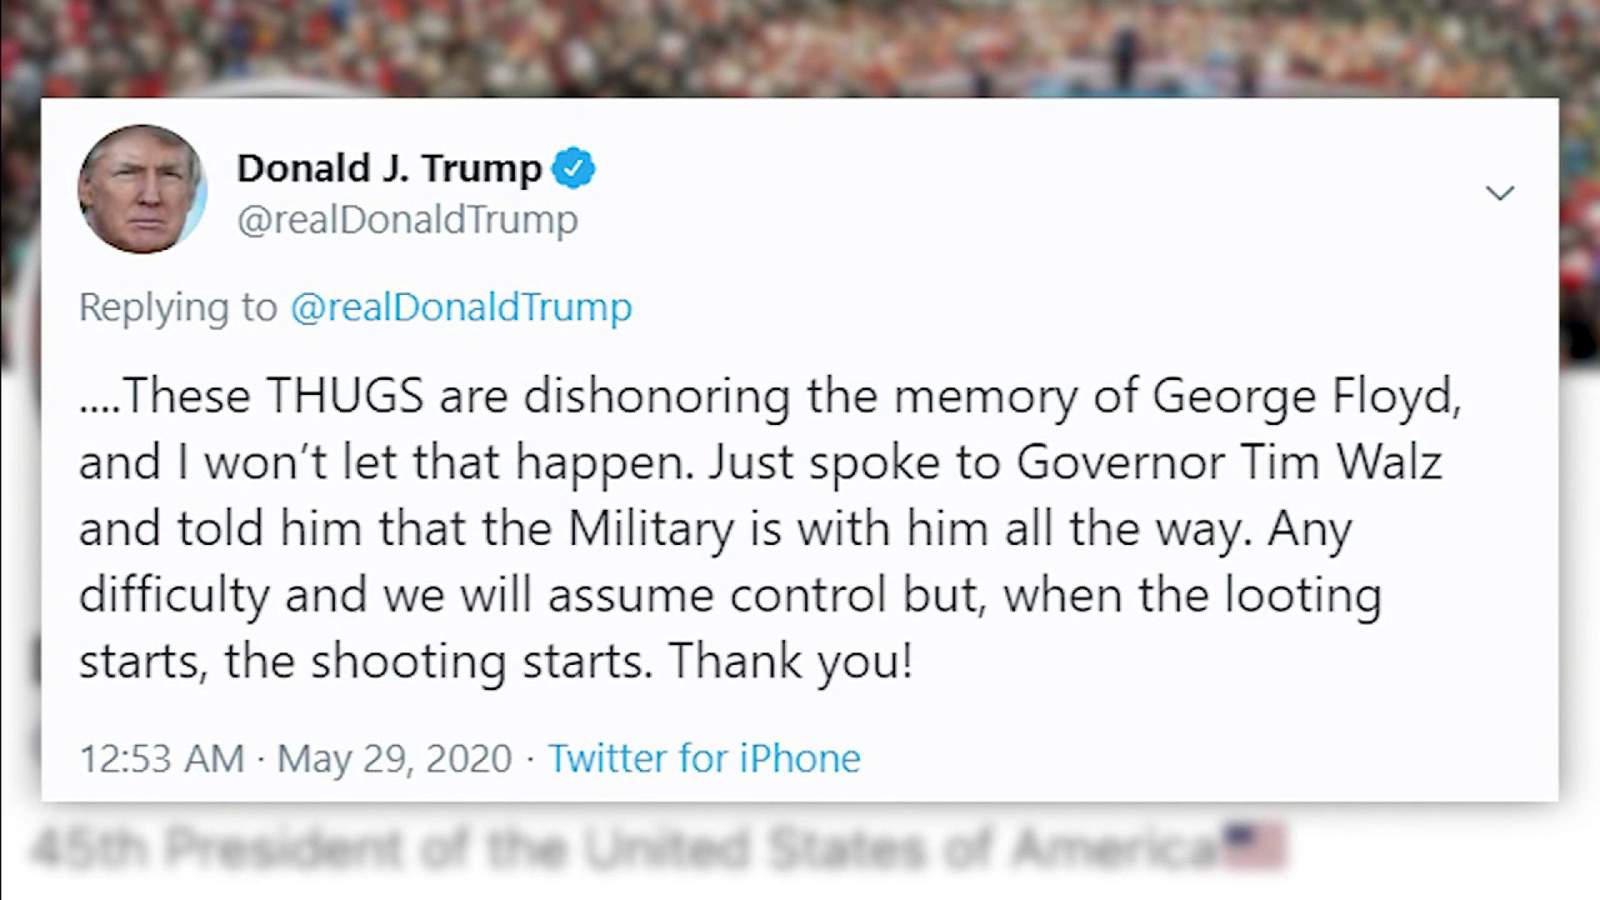 Trumps looting, shooting tweet flagged by Twitter